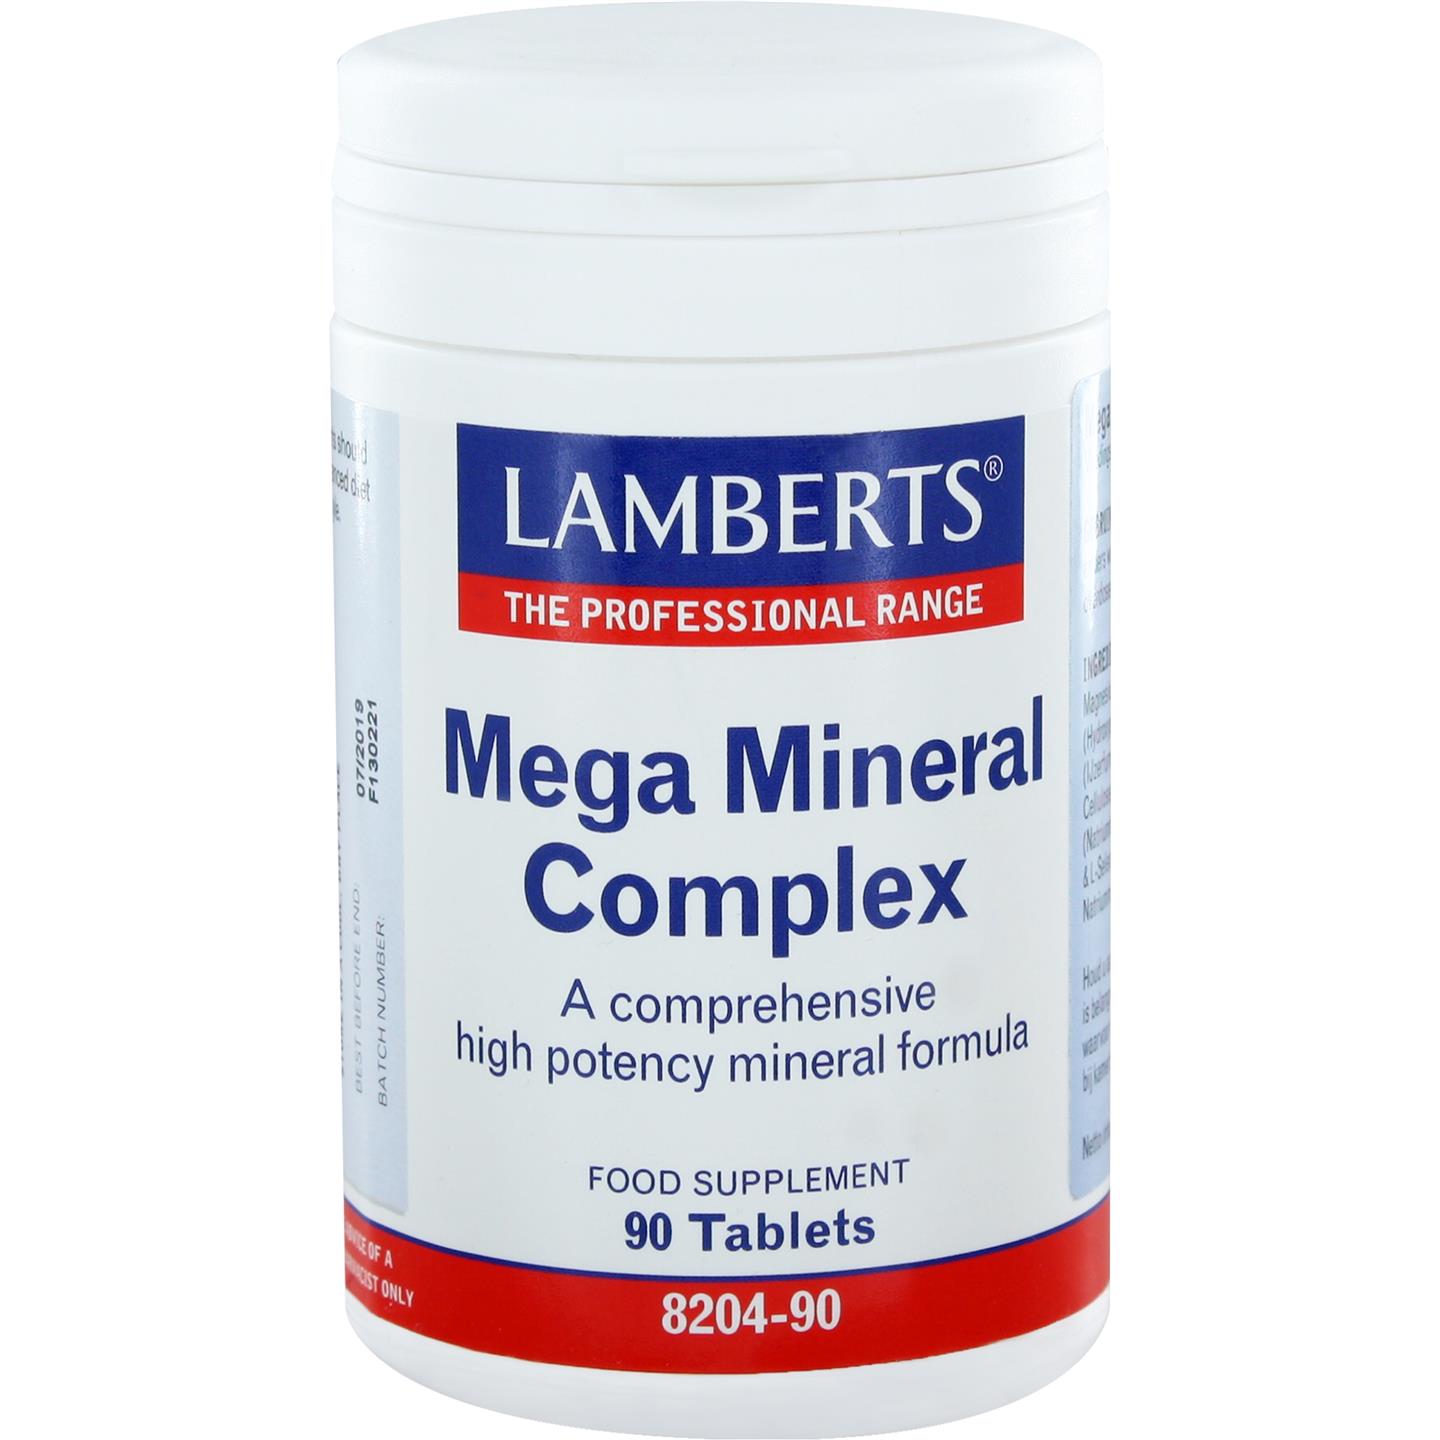 Mega Mineral complex